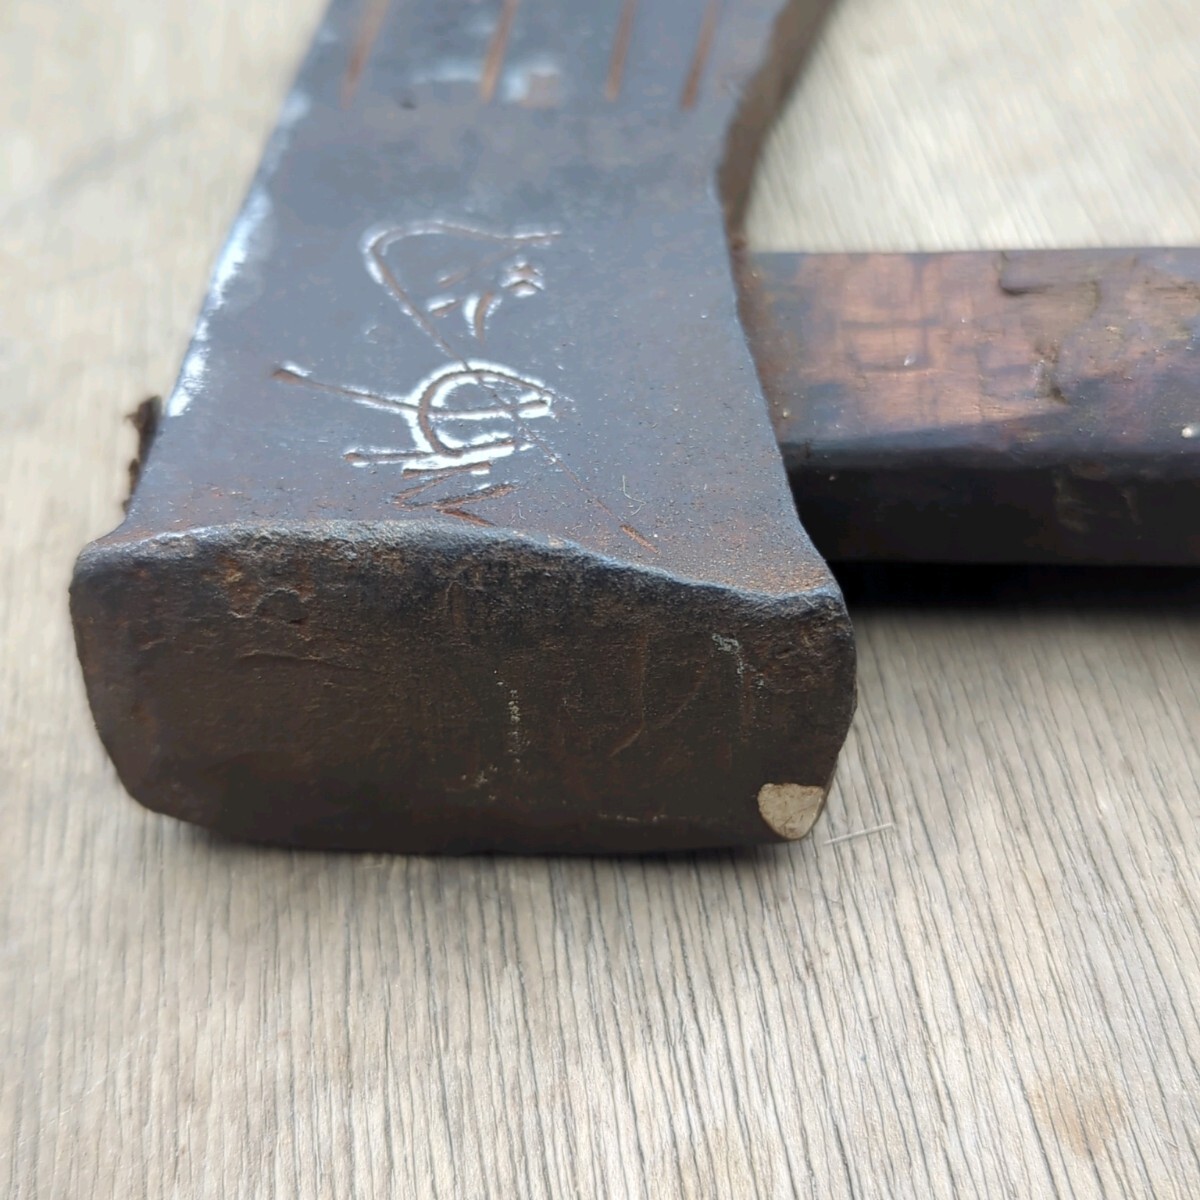  рука топор топор кувалда ono дрова десятая часть ручной инструмент инструмент работа инструмент плотничный инструмент старый инструмент гора .